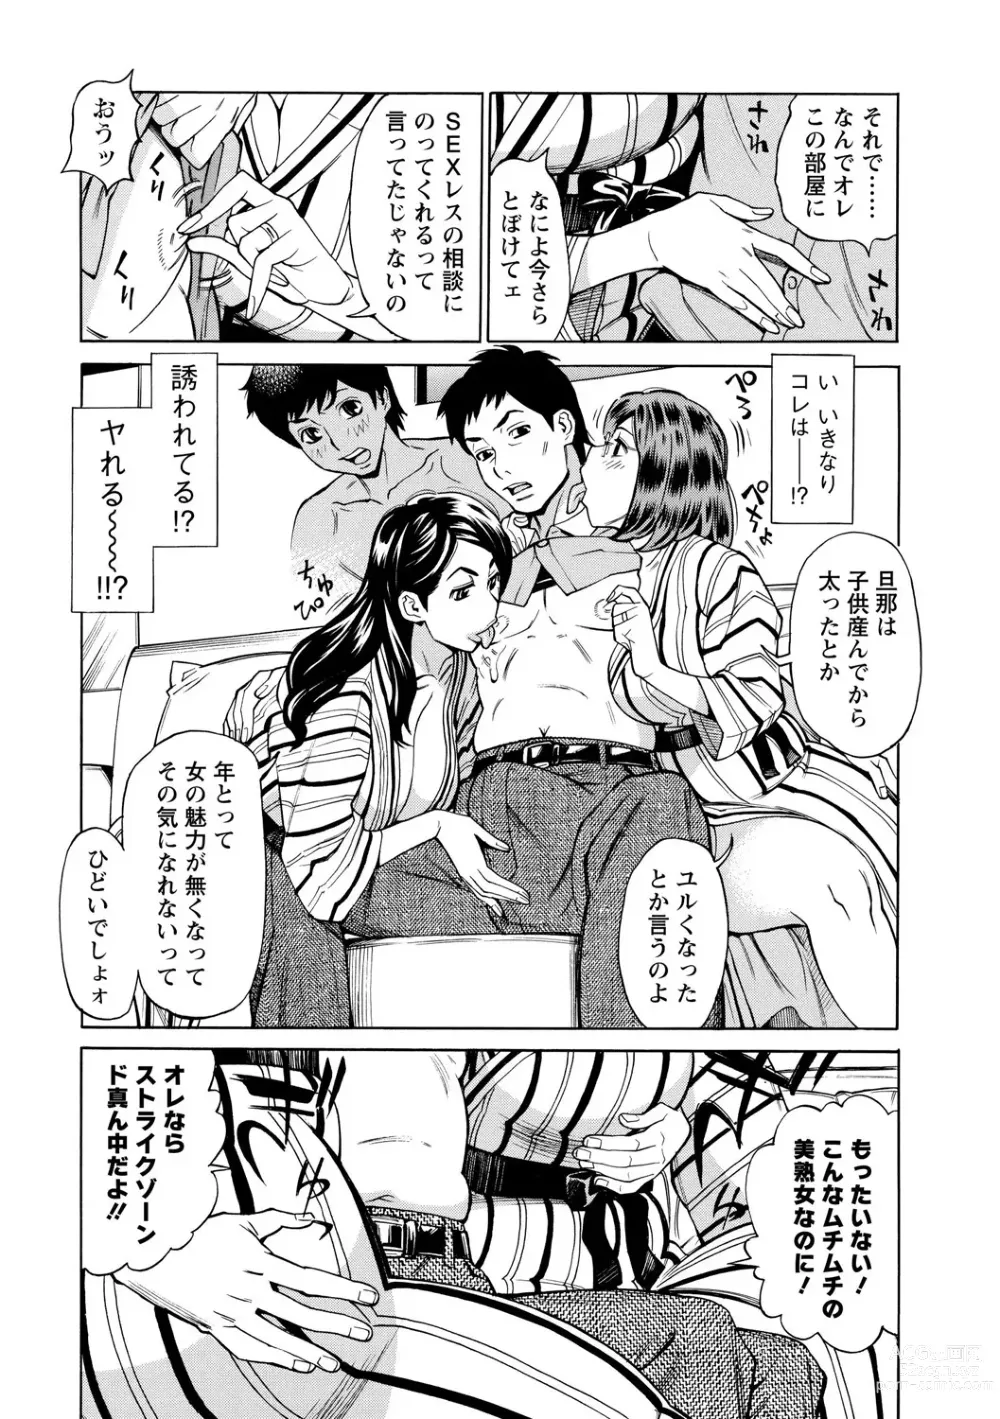 Page 12 of manga Inniku Jukujo no Namashibori.